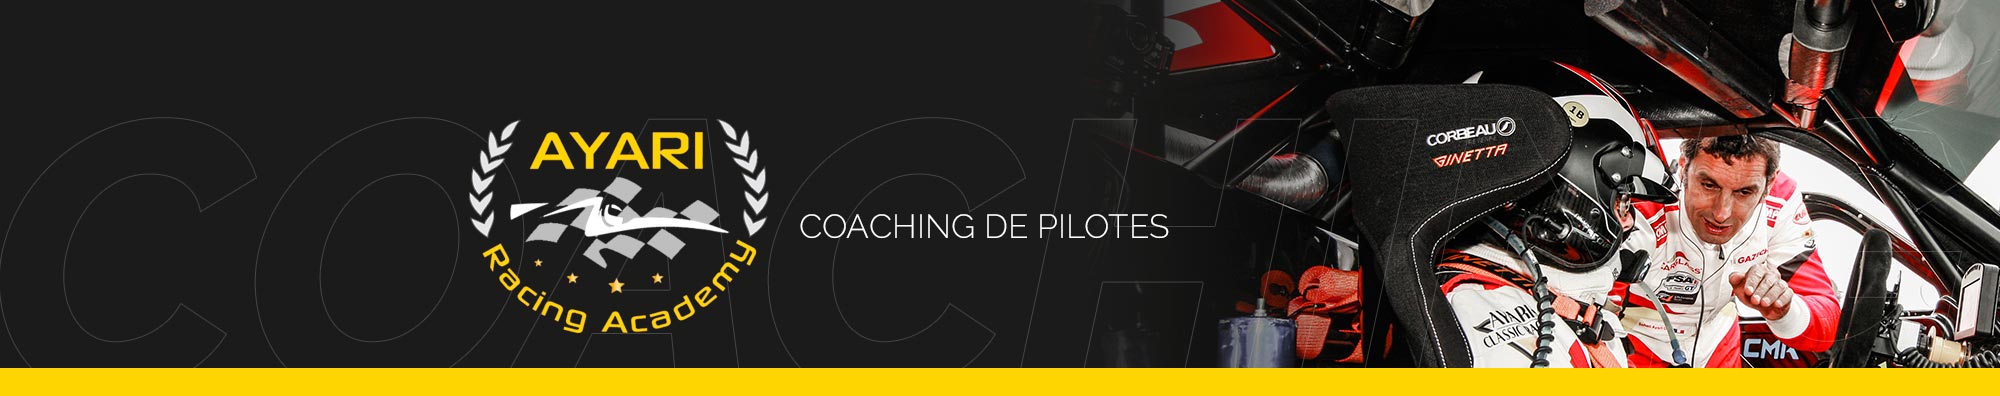 Soheil ayari-coaching de pilotes automobiles